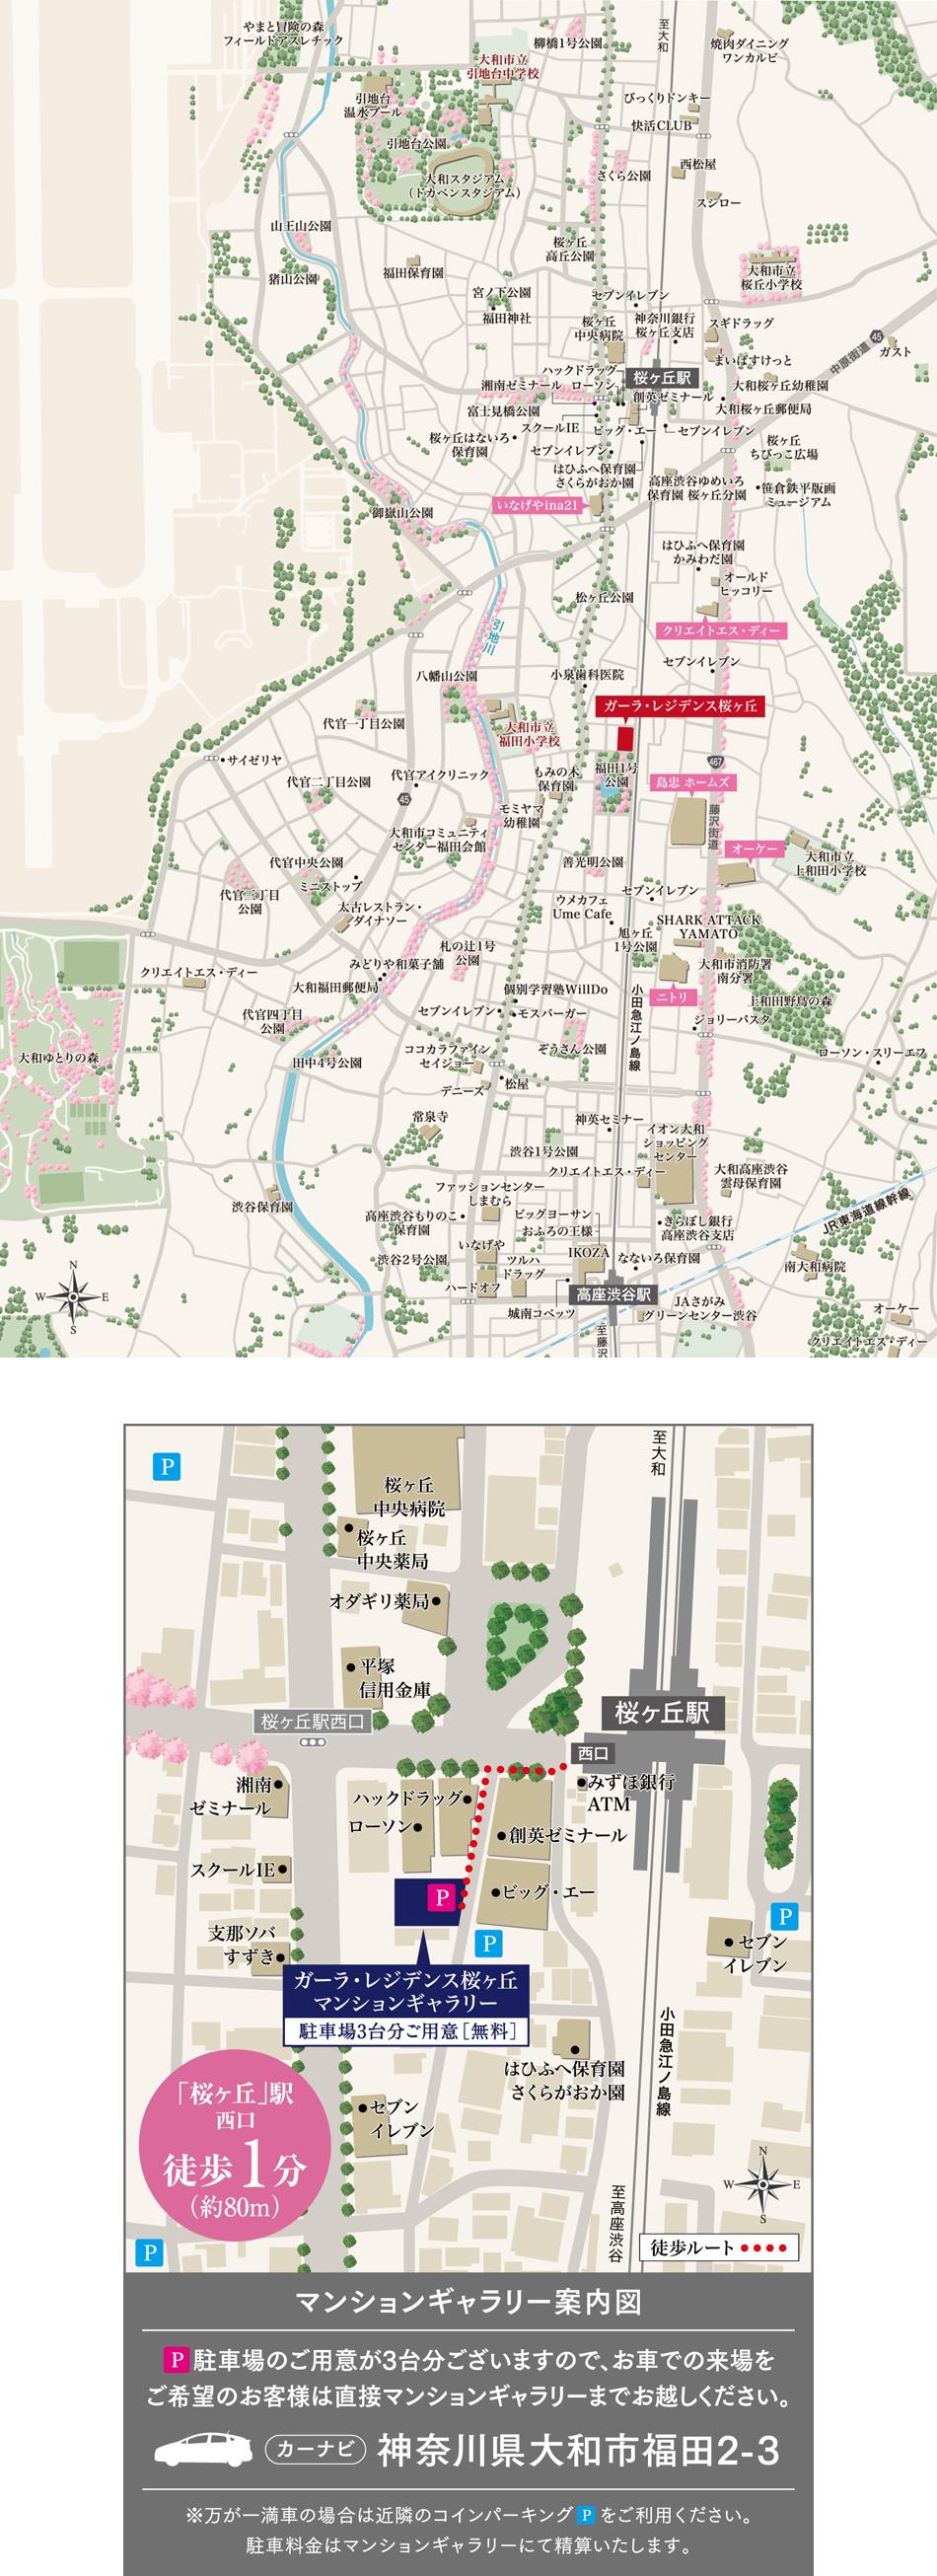 ガーラ・レジデンス桜ヶ丘のモデルルーム案内図